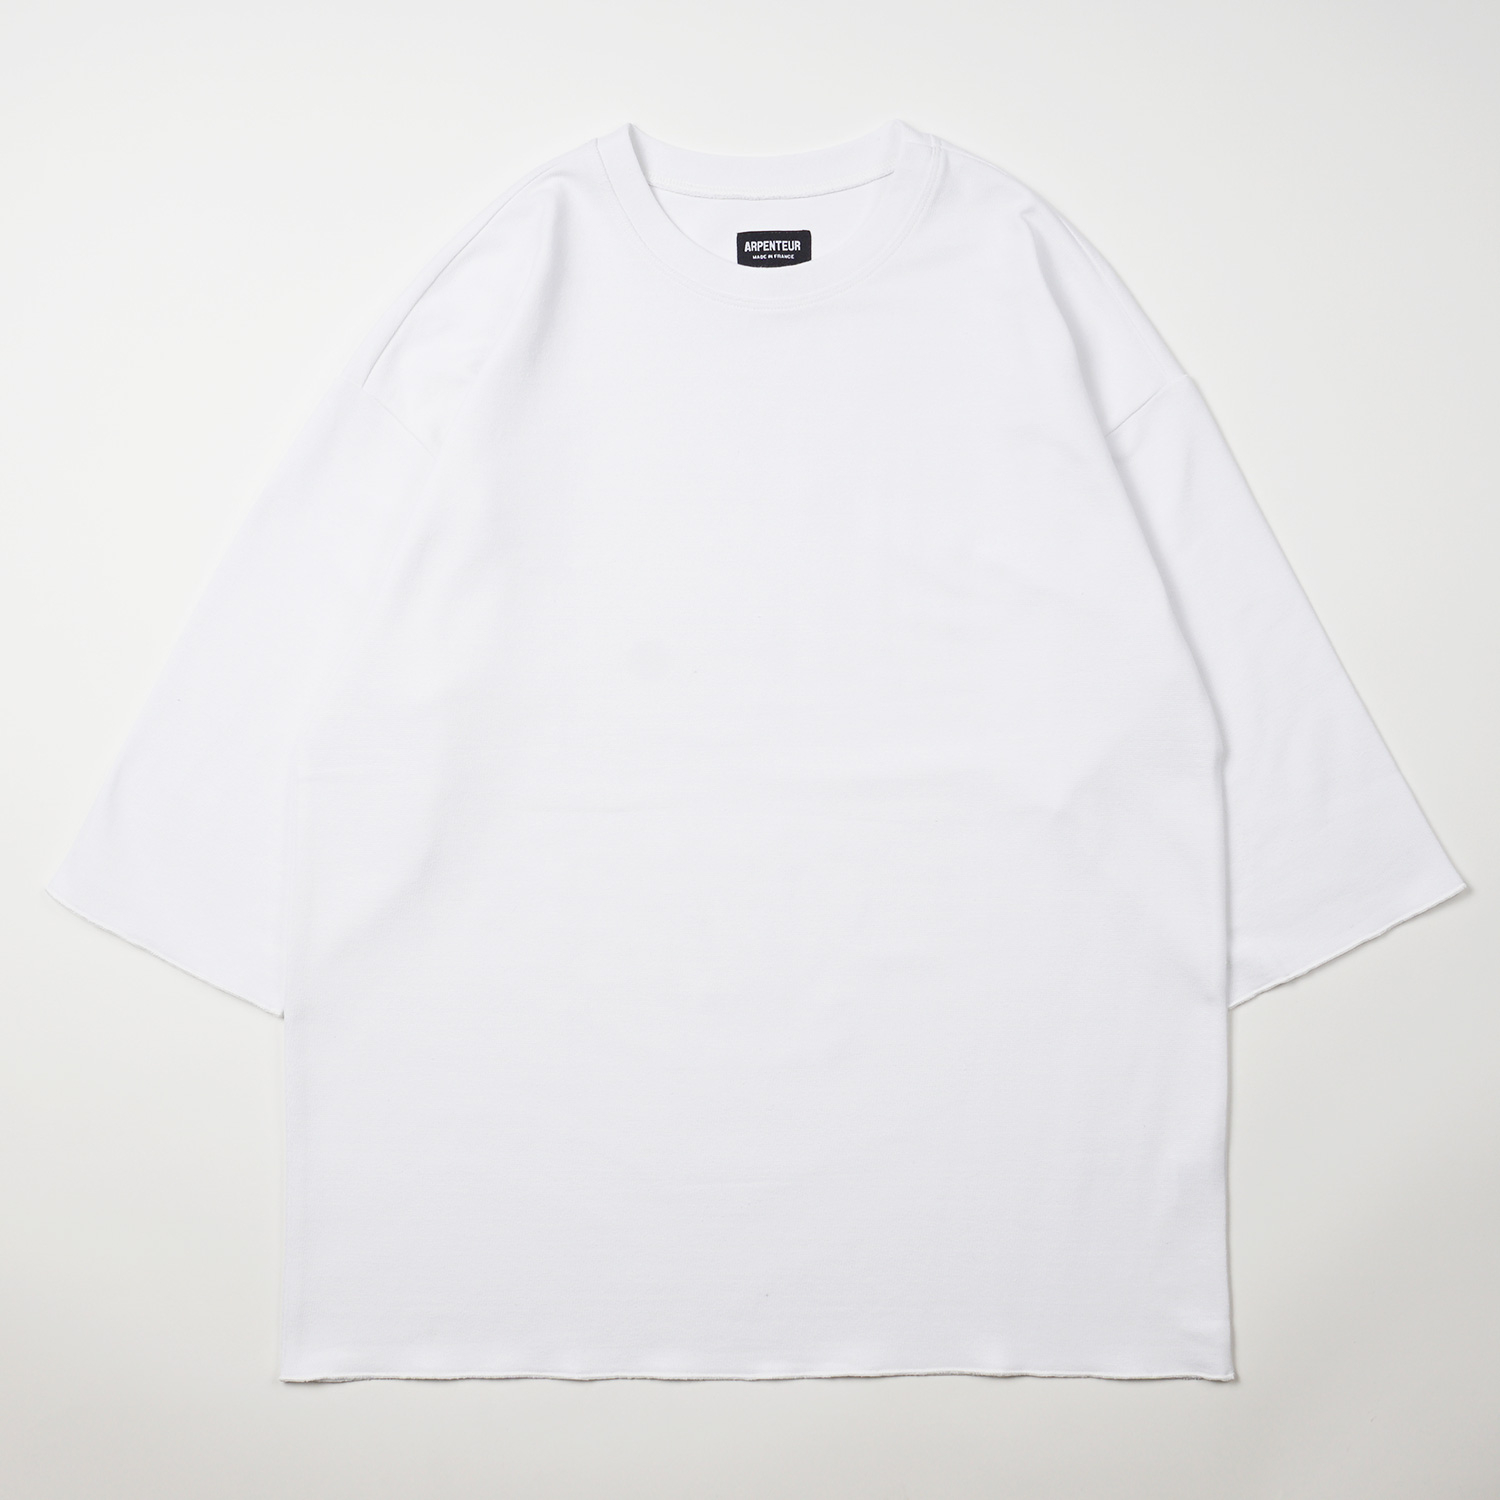 Marinière t-shirt in White color by Arpenteur